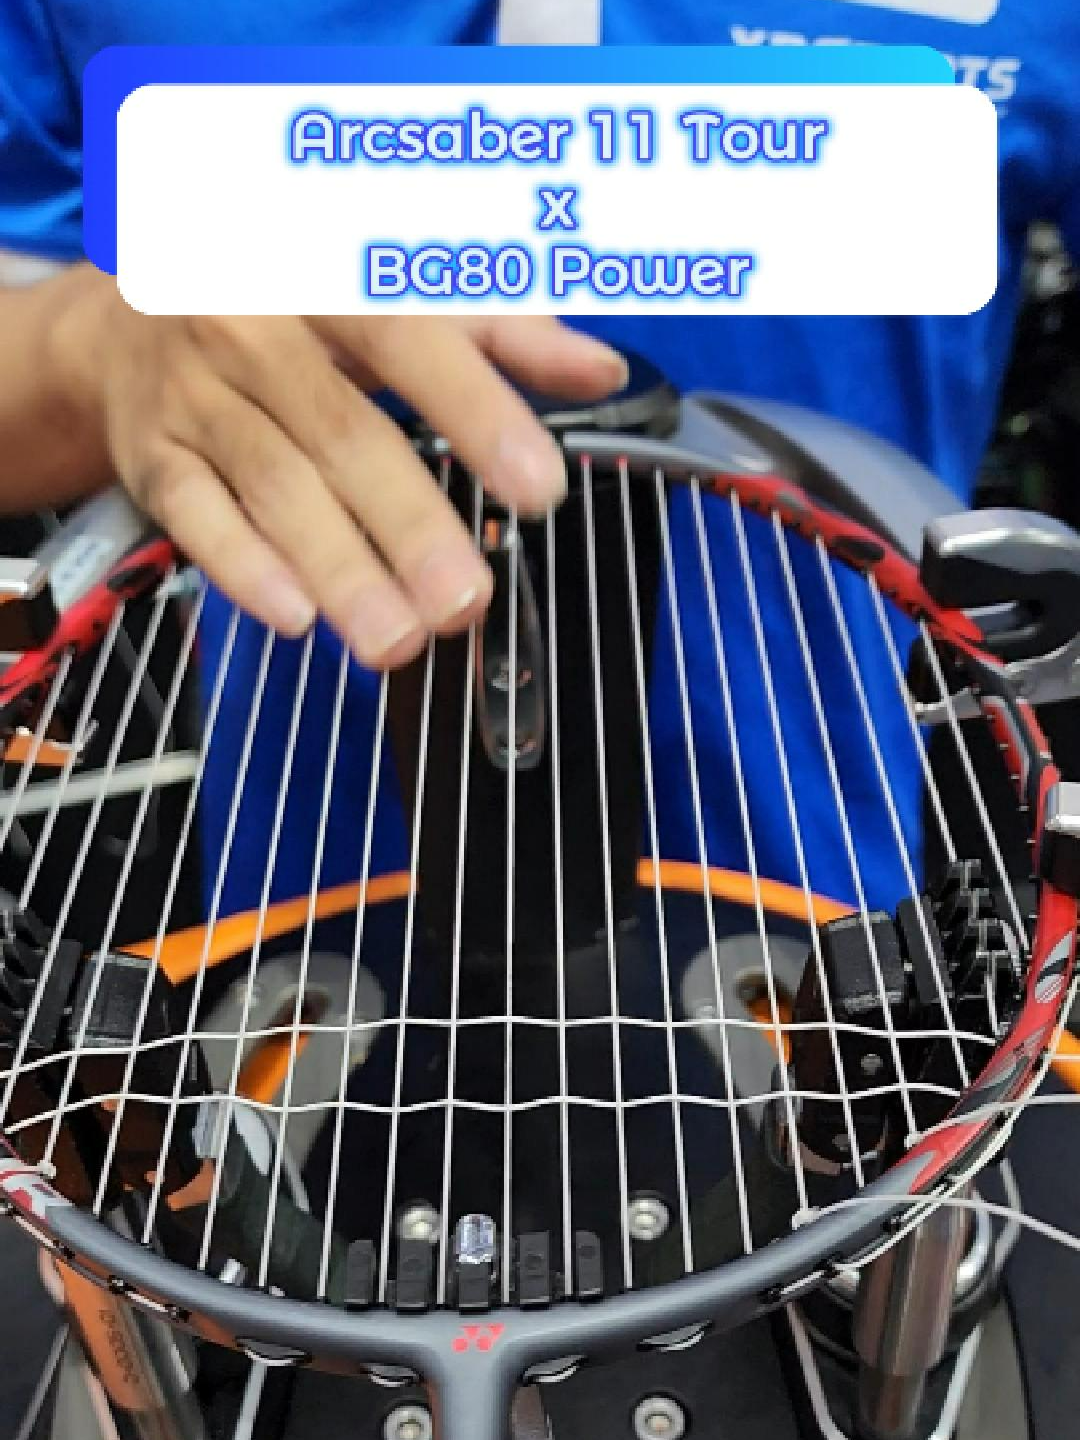 Có ae nào ấn tượng bởi phối màu đỏ xám trên Arcsaber 11 Tour giống mình ko? Cùng mình lên cước BG80 Power cho em này nhé #arcsaber11 #bg80power #xuhuong #fyp #caulong #caulongvietnam #thichcaulong #congdongcaulongvietnam #xbsports #xbsportsquan12 #choicaulong #badminton